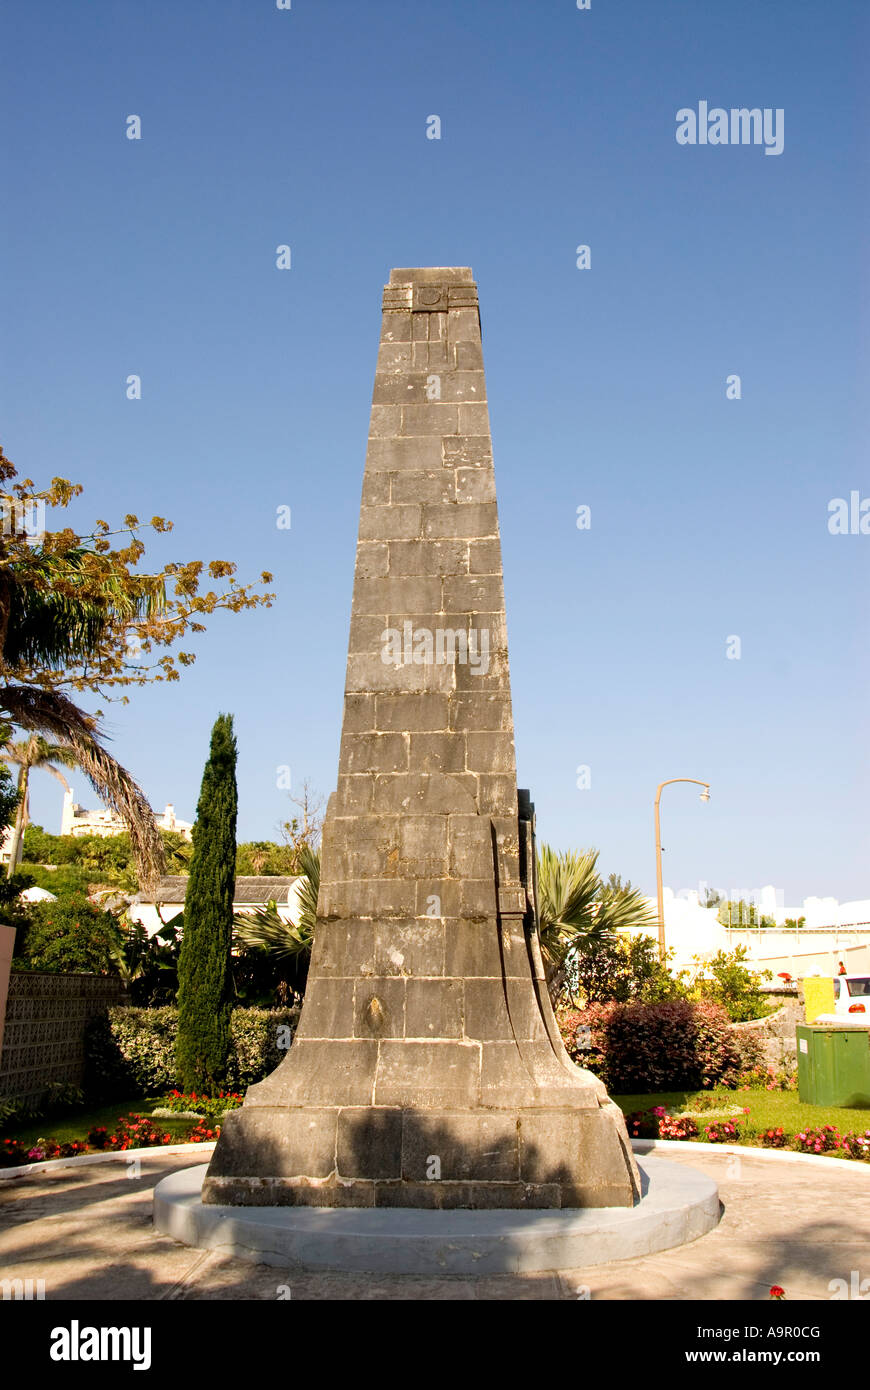 Les Bermudes St George Somers Jardin colonne en pierre historique monument city island l'histoire d'attraction touristique st georges st ge Banque D'Images